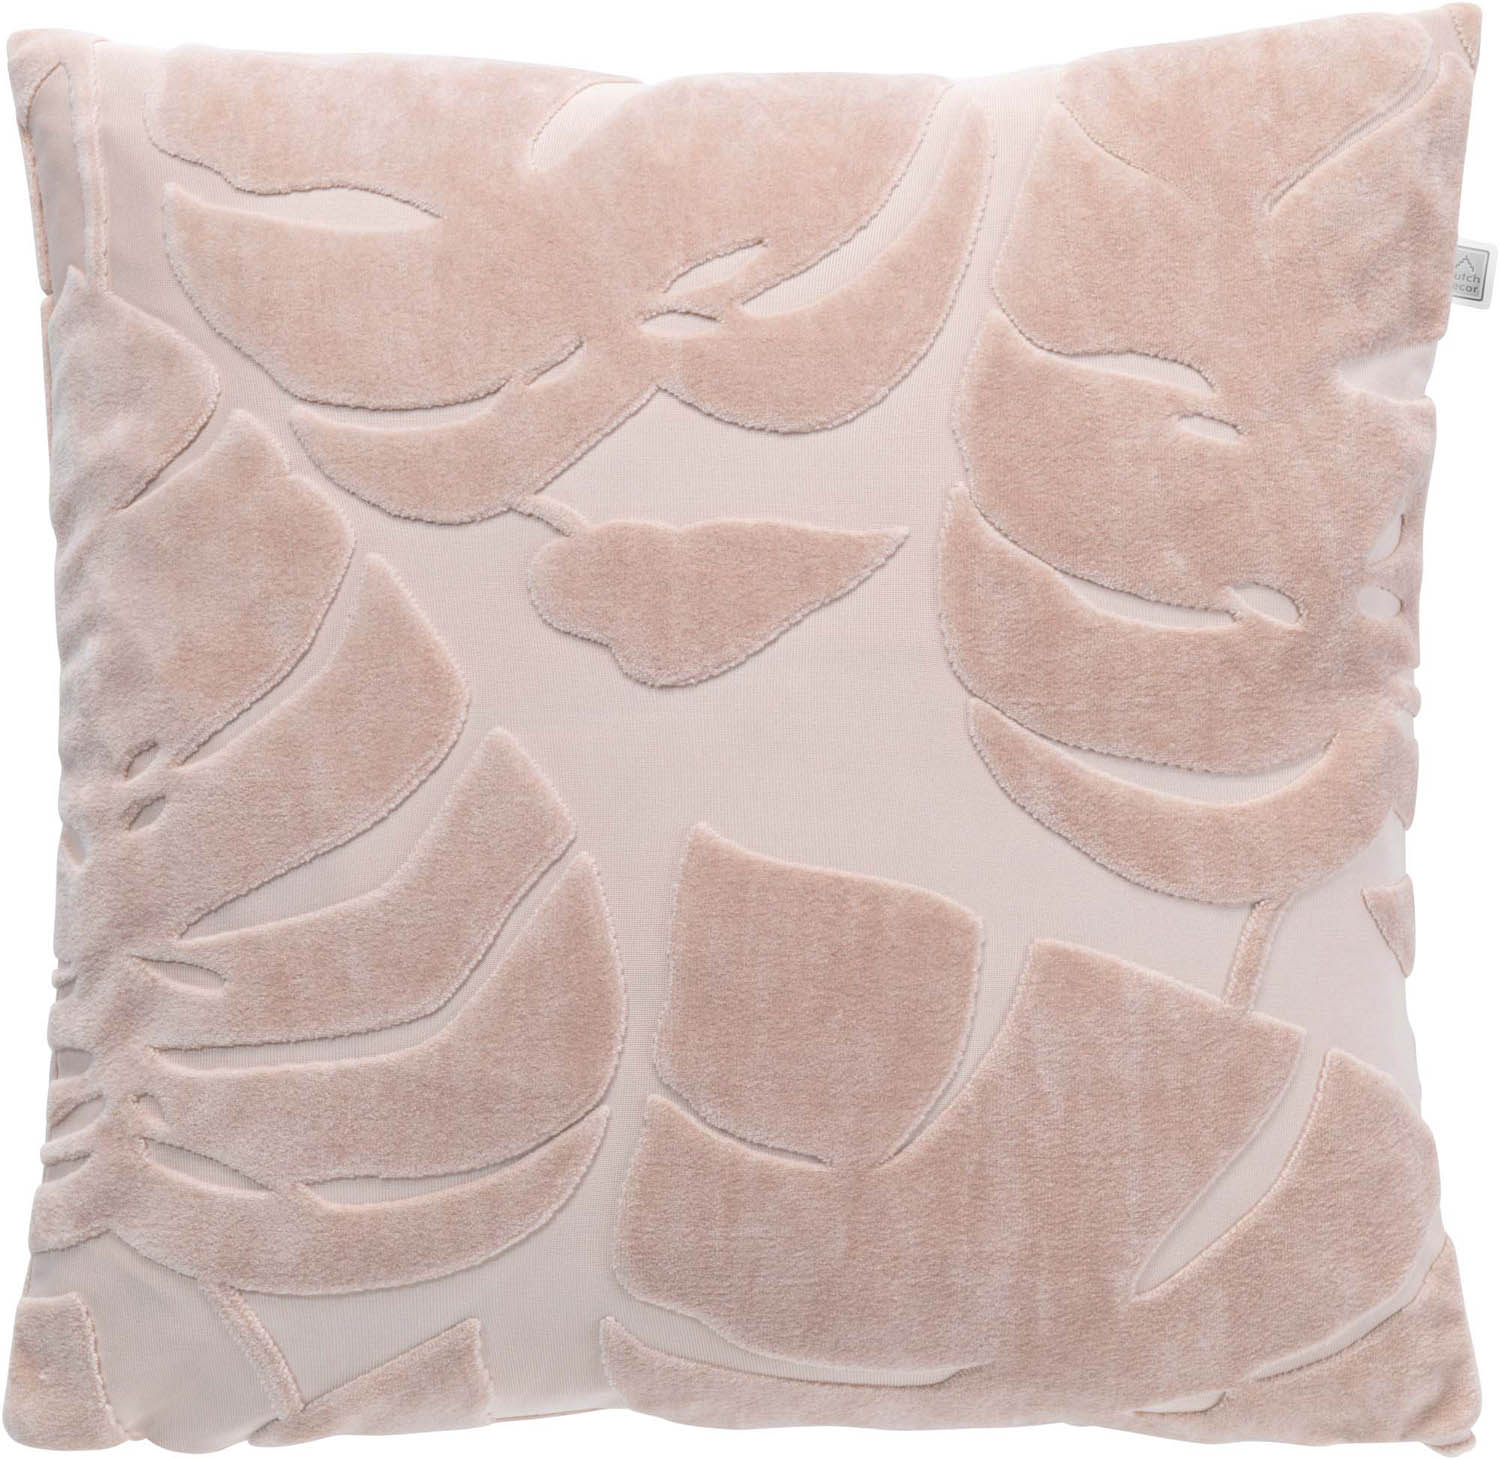 Cushion cover Freddy 45x45 cm nude